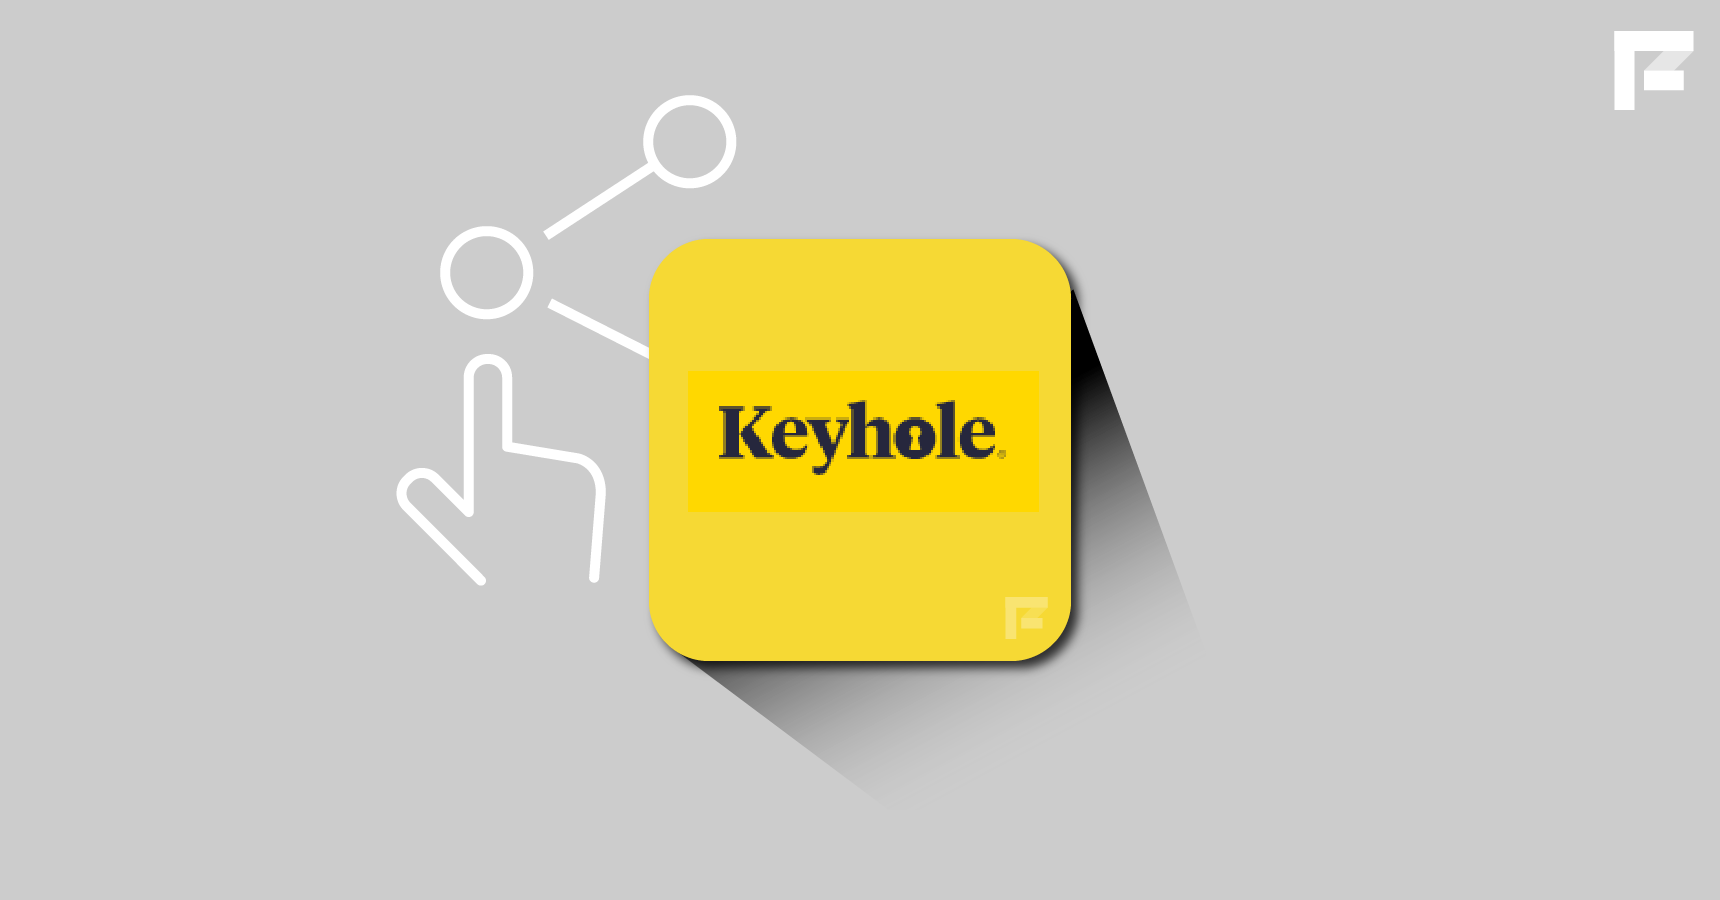 Keyhole, herramienta para rastrear cuentas en redes sociales